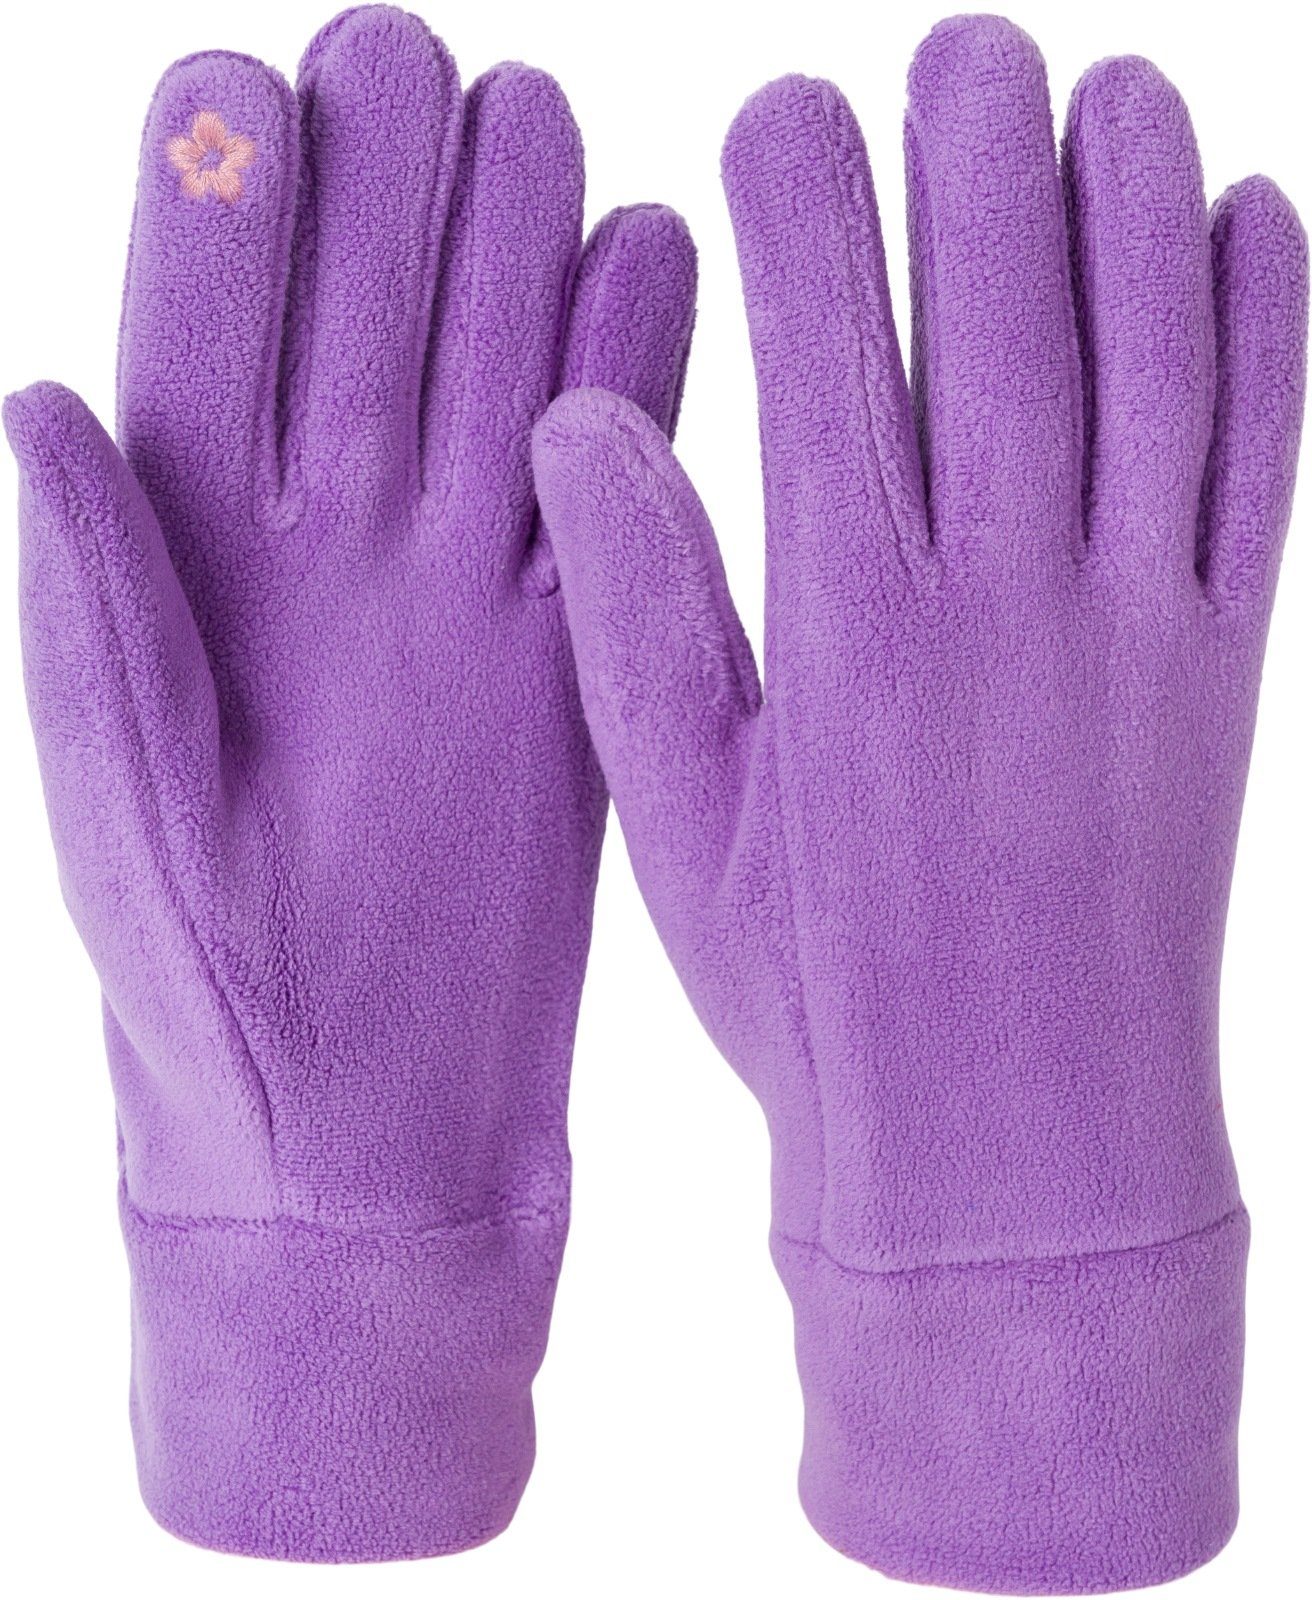 Lila Fleece Touchscreen Handschuhe Einfarbige Fleecehandschuhe styleBREAKER